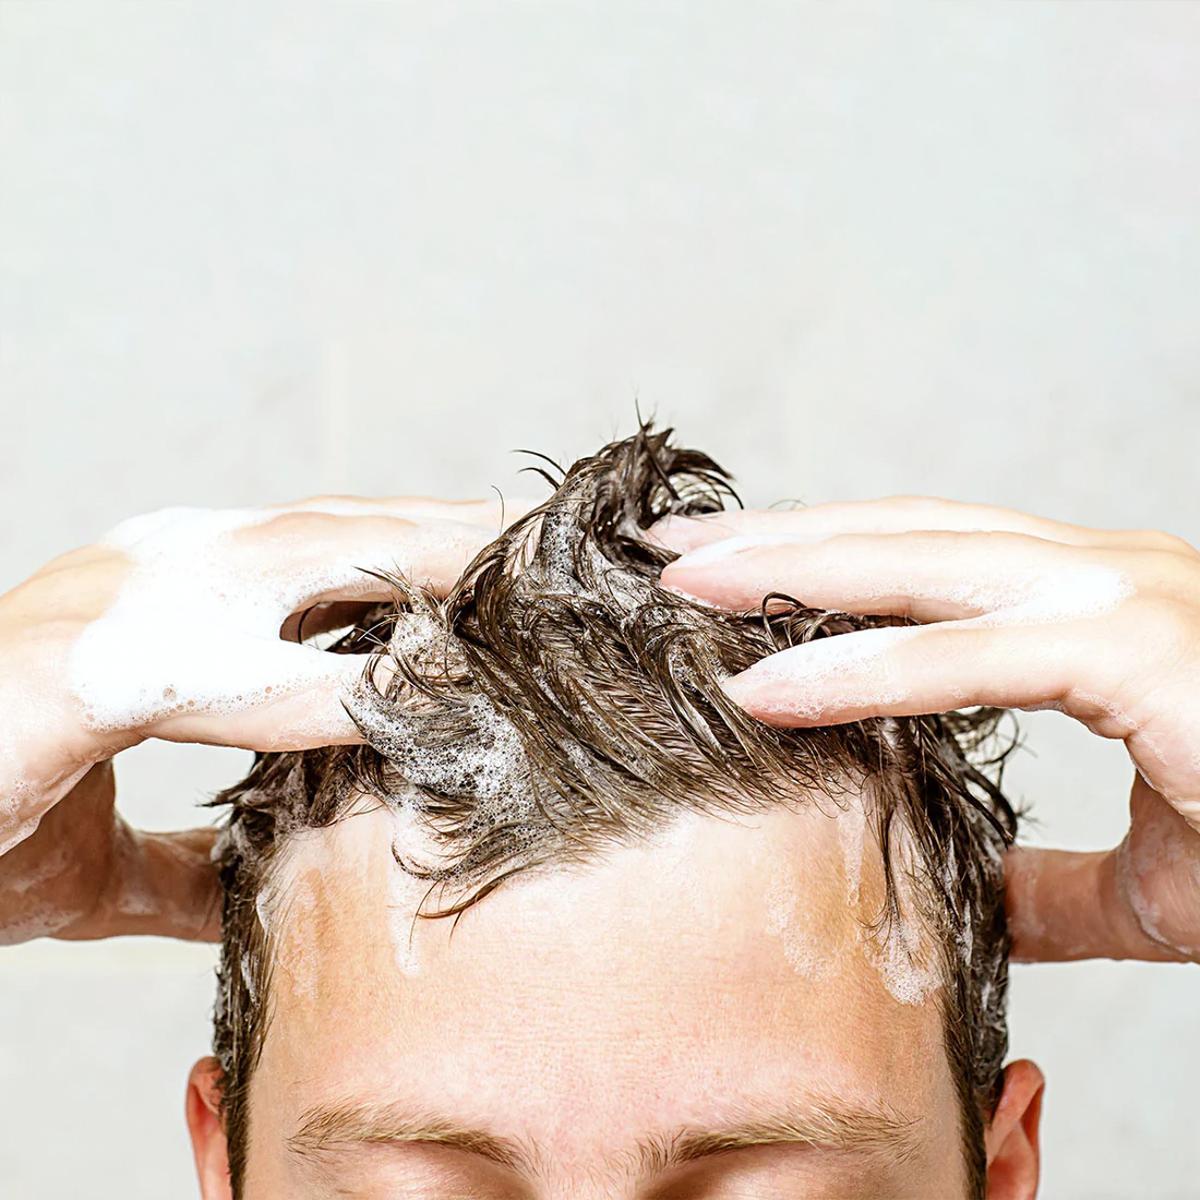 El producto logra estimular las raíces del cabello durante el lavado